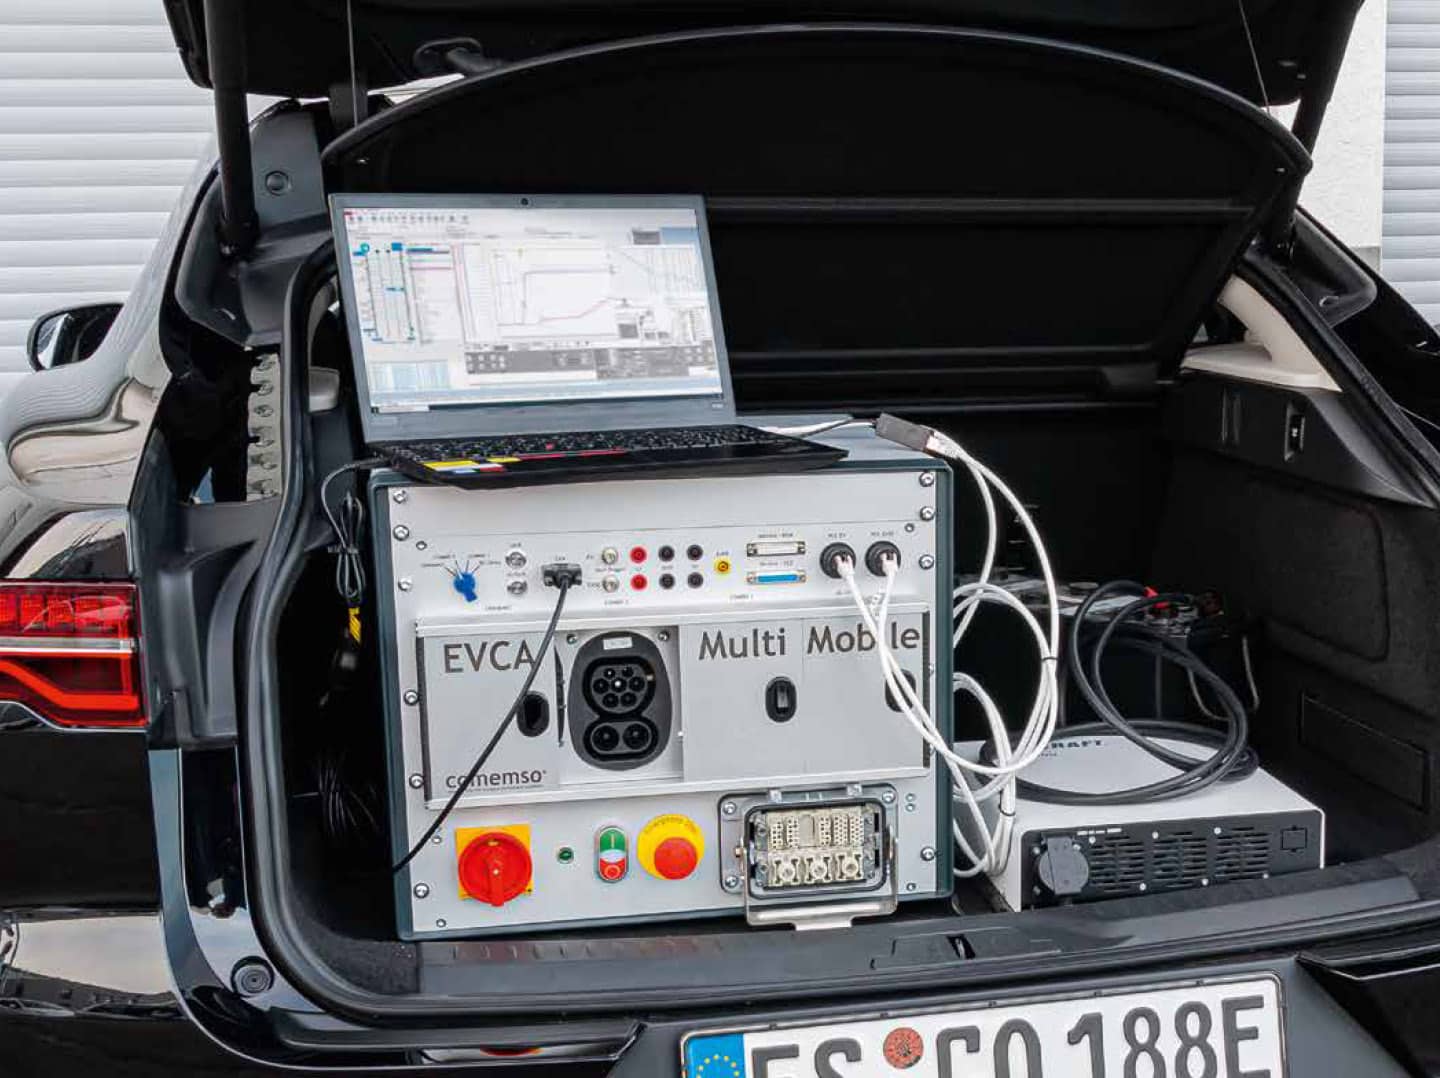 EVCA Multi Mobile Laboratory in a trunk